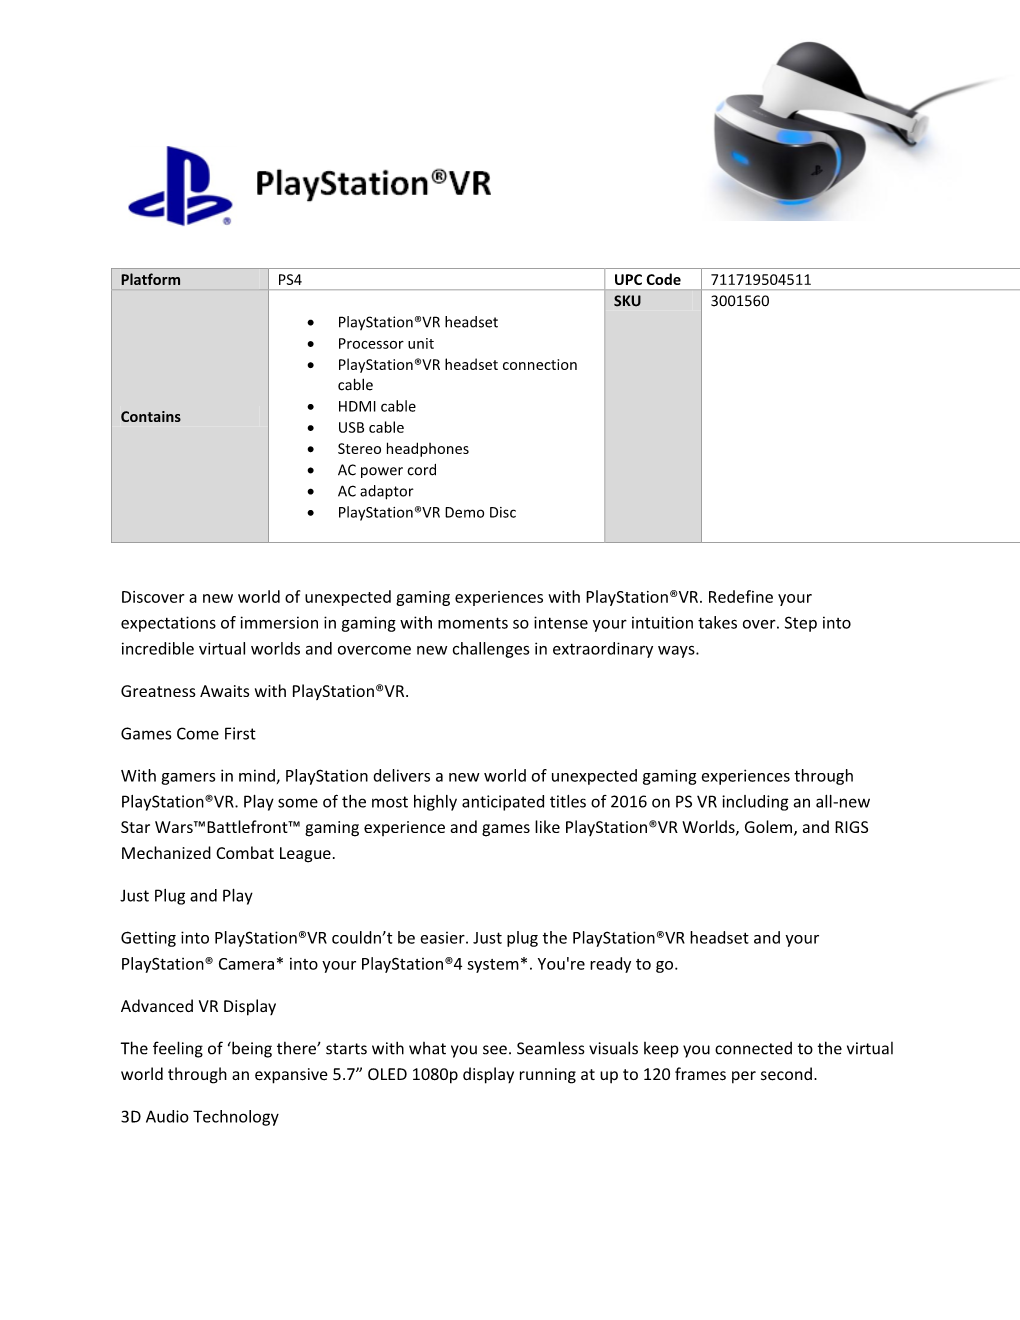 Sony Playstation Virtual Reality Headset Specs